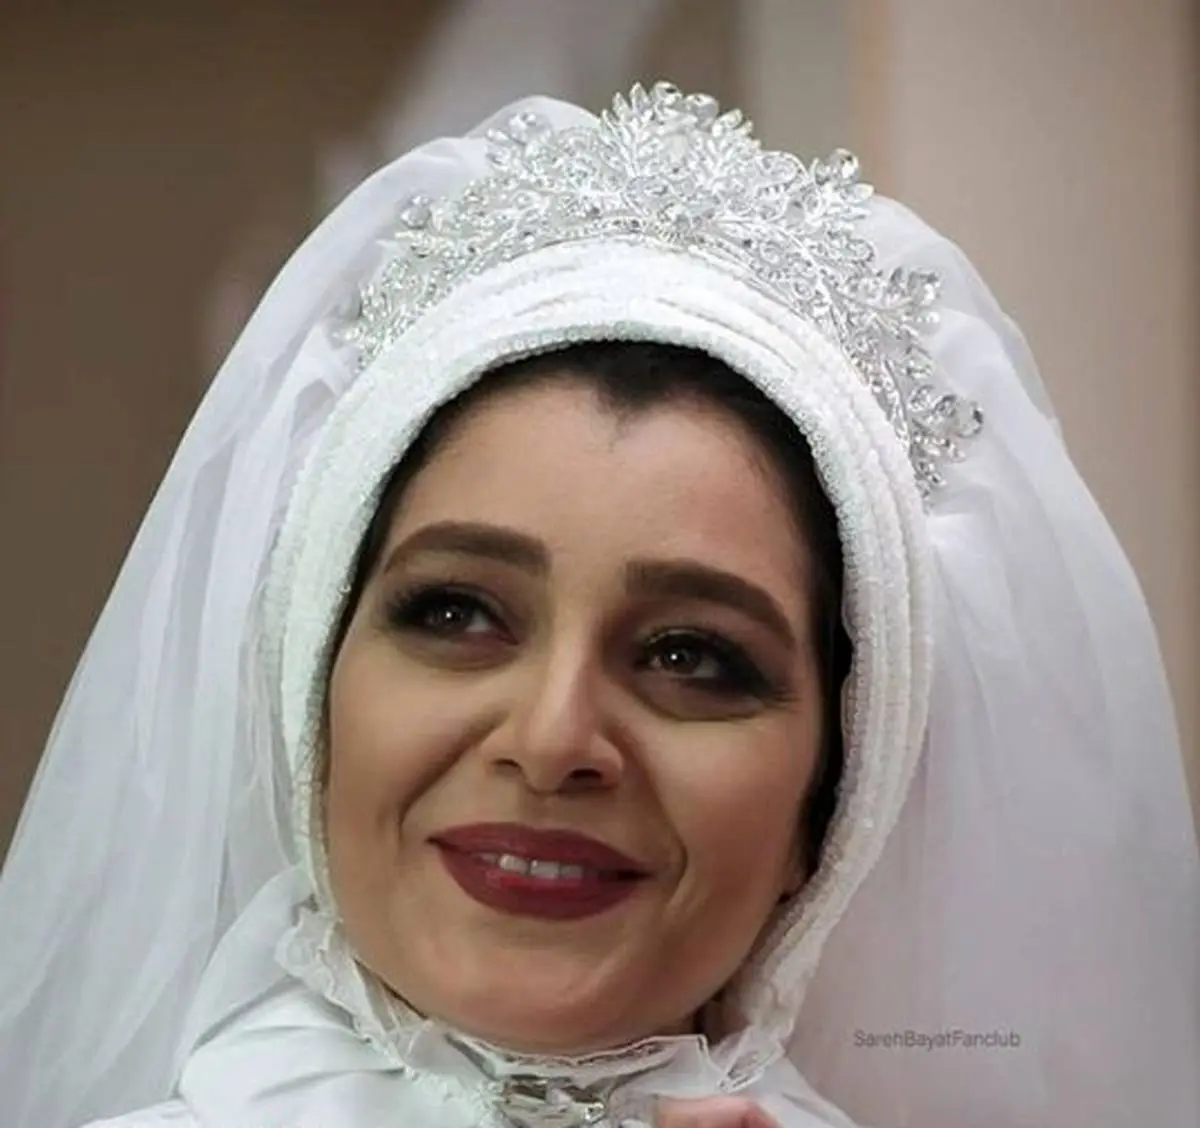 لباس عروس جواهردوزی شده ساره بیات کولاک کرد | ساره بیات در 43 سالگی لباس عروس پوشید